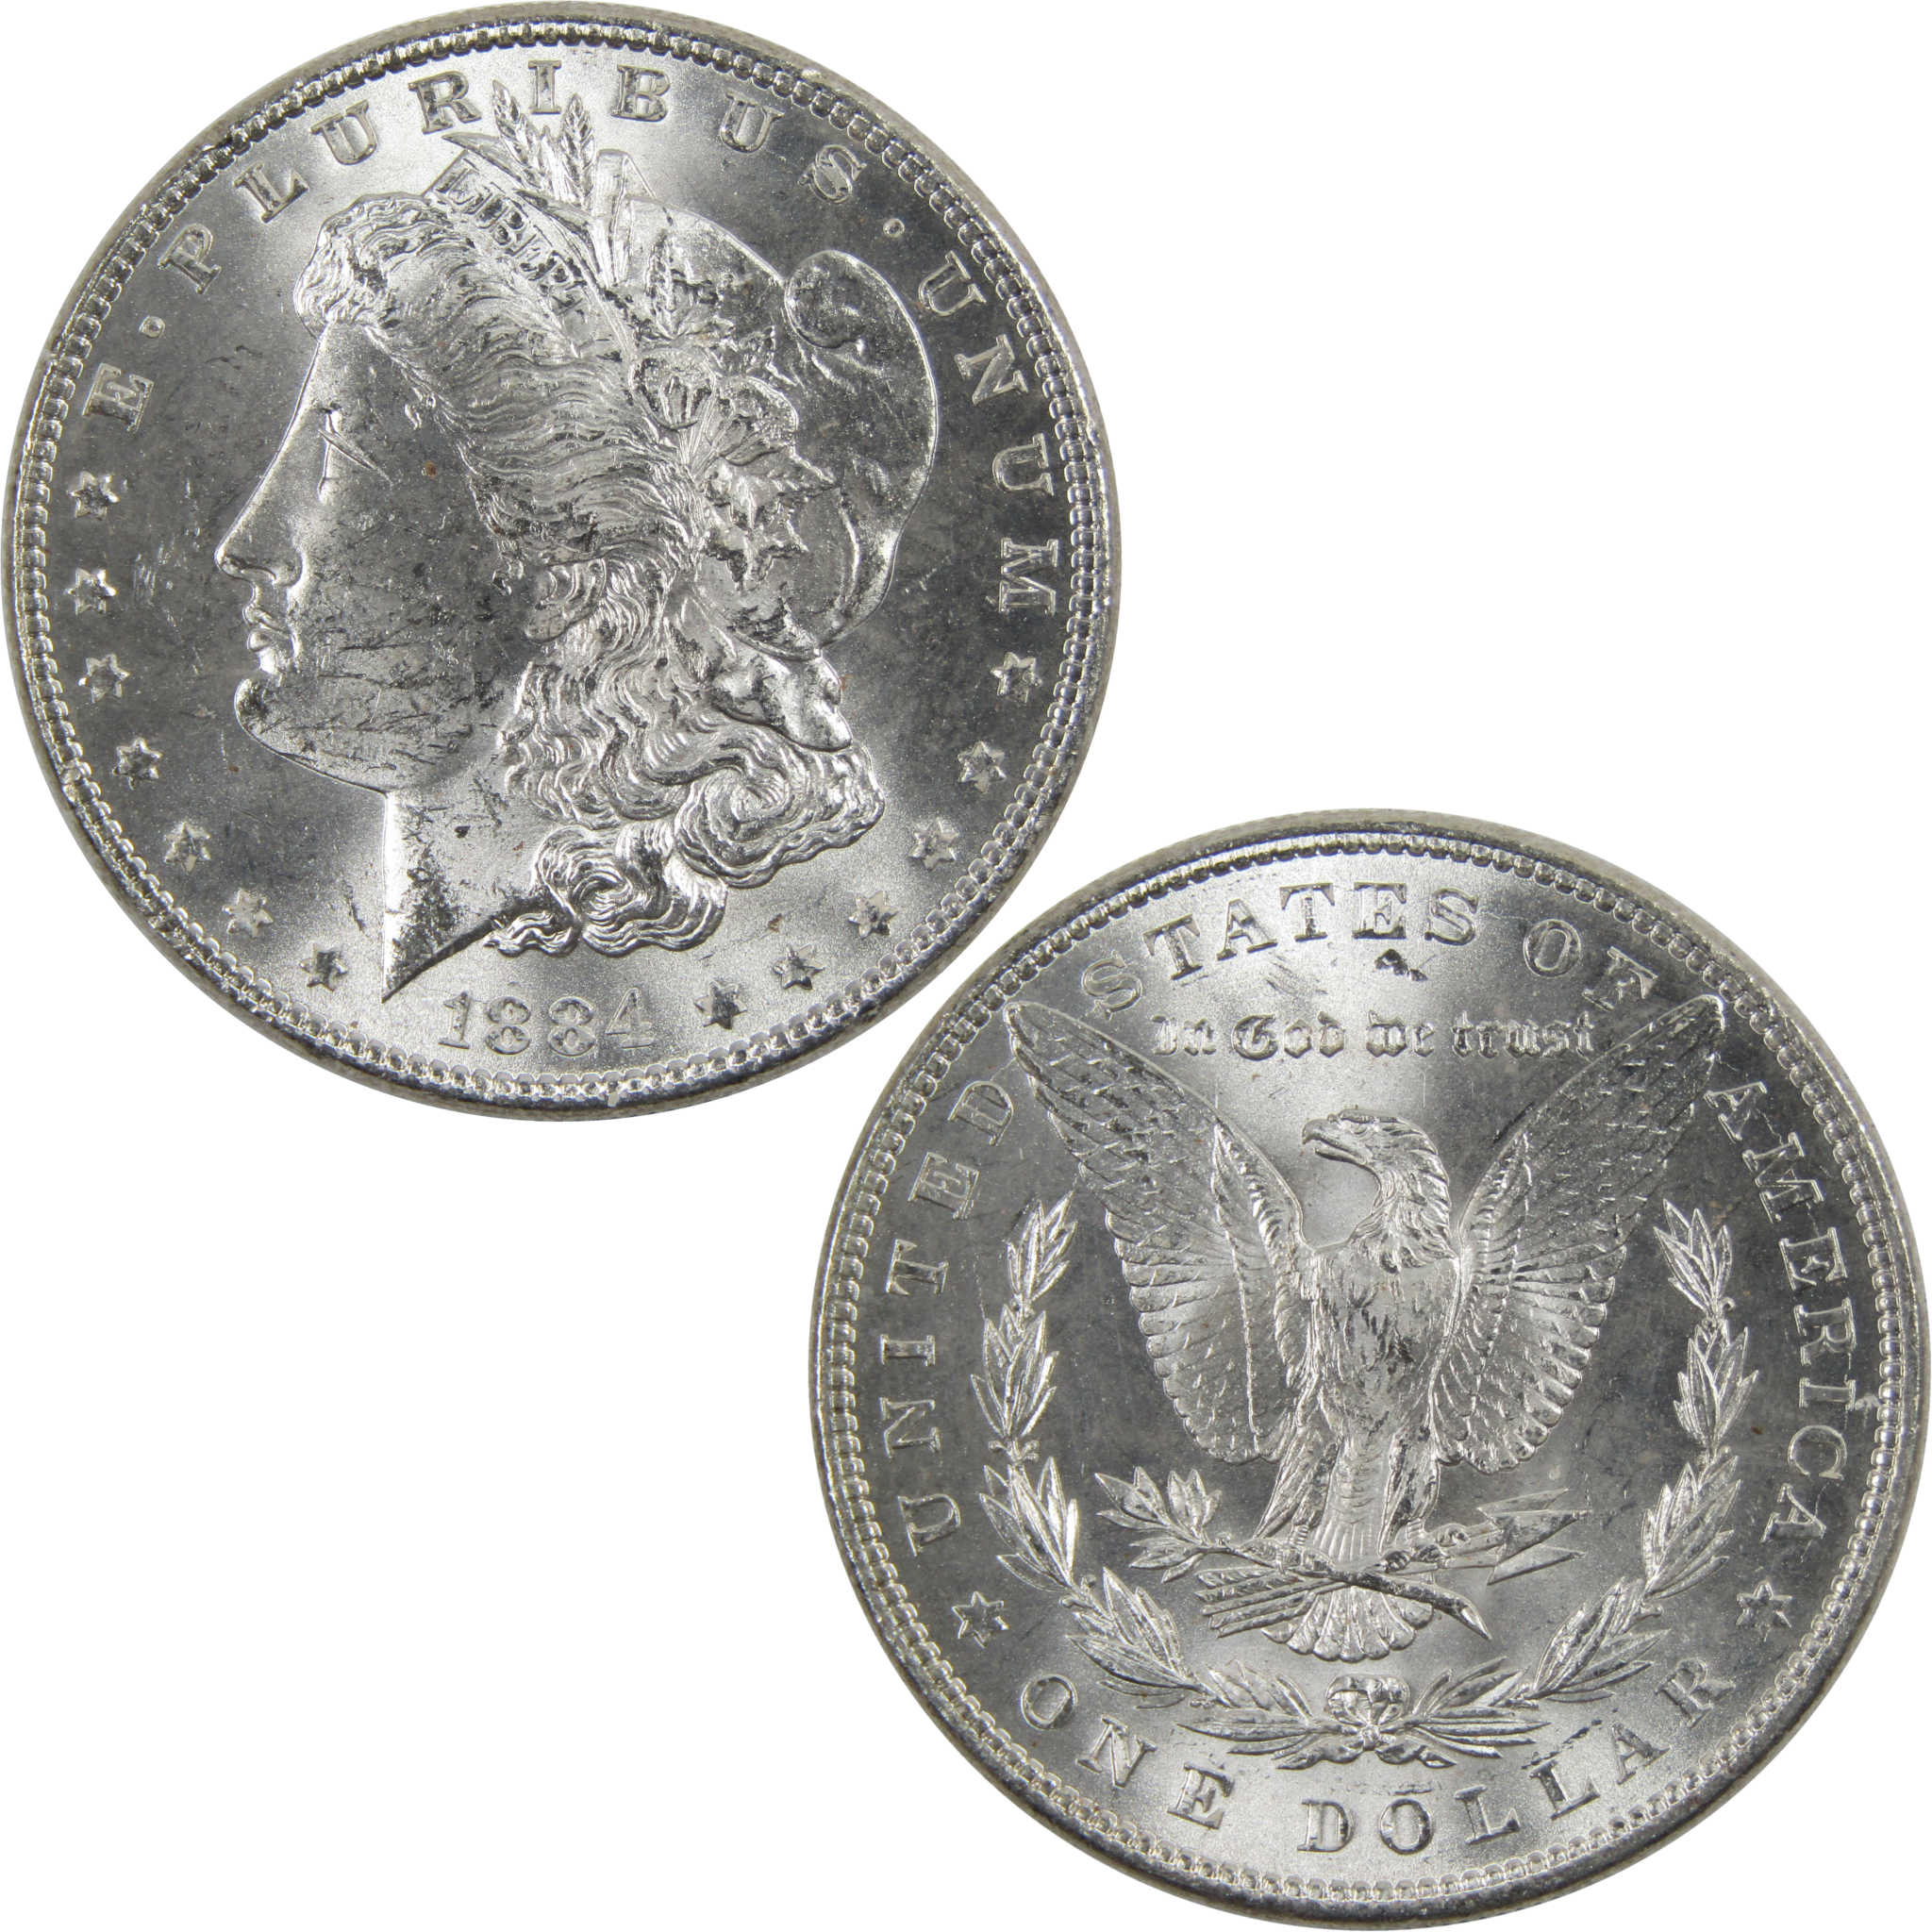 1884 Morgan Dollar BU Uncirculated 90% Silver $1 Coin SKU:I6025 - Morgan coin - Morgan silver dollar - Morgan silver dollar for sale - Profile Coins &amp; Collectibles